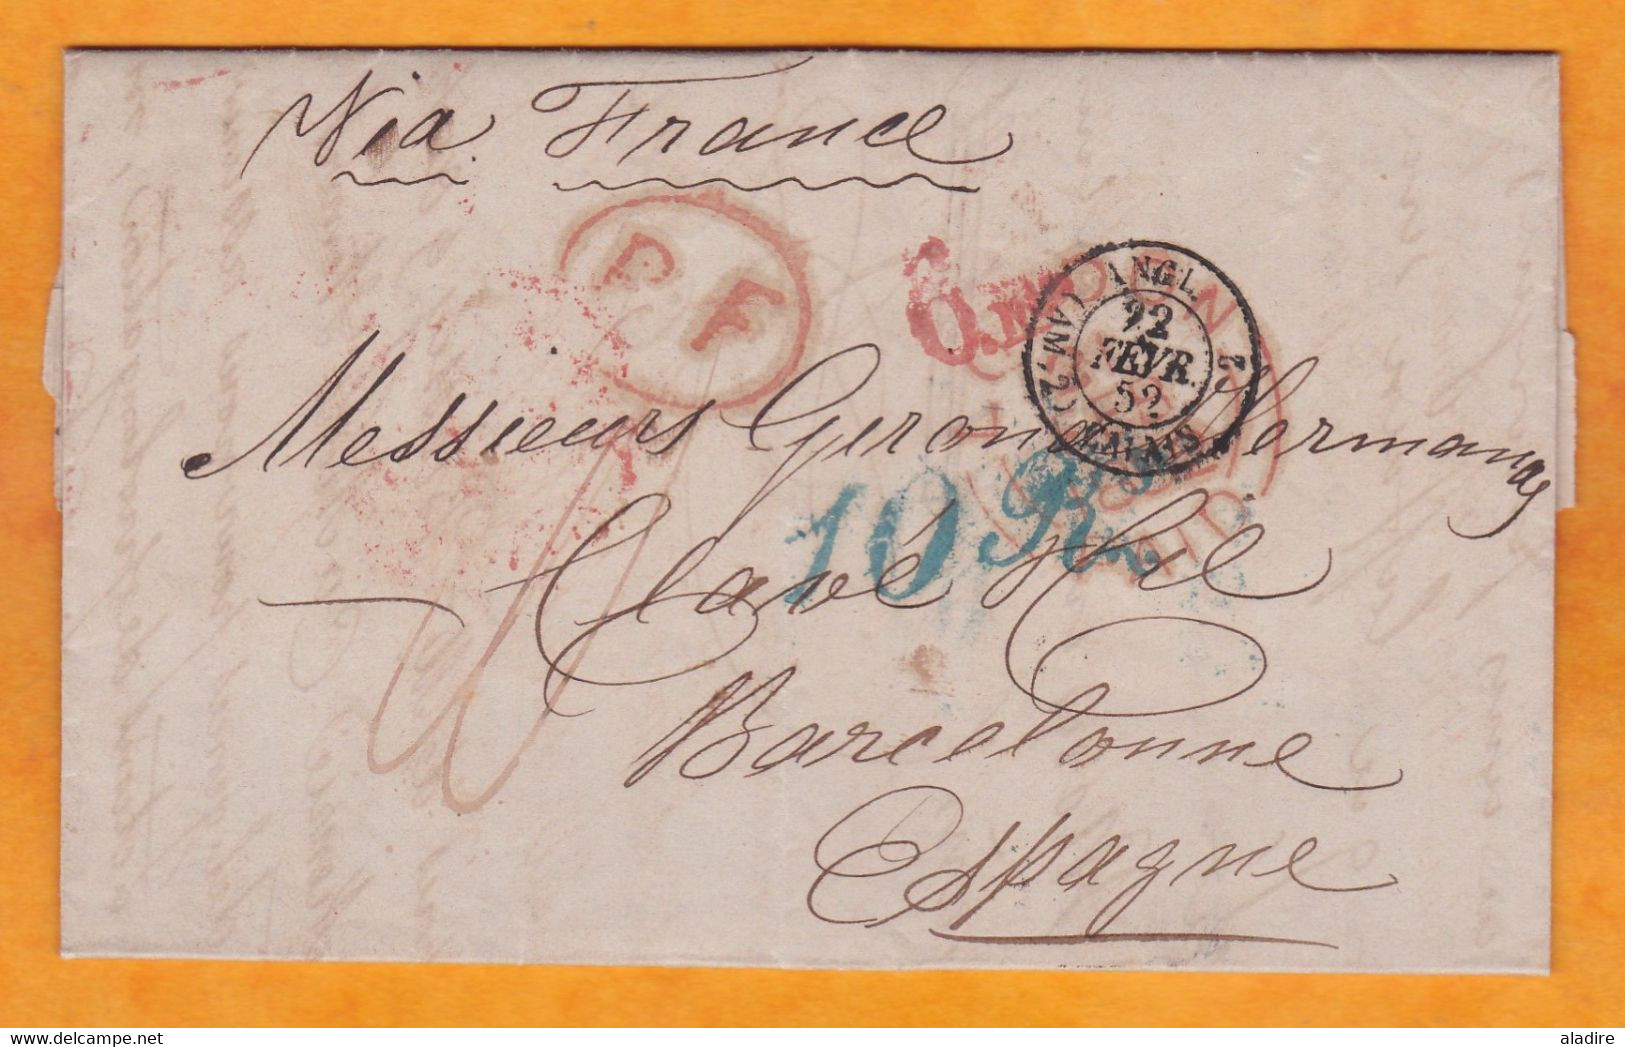 1852 - Lettre Pliée Avec Corespondance De 3 P En Français De London Vers Barcelona Catalunya Espagne Via France - Postmark Collection